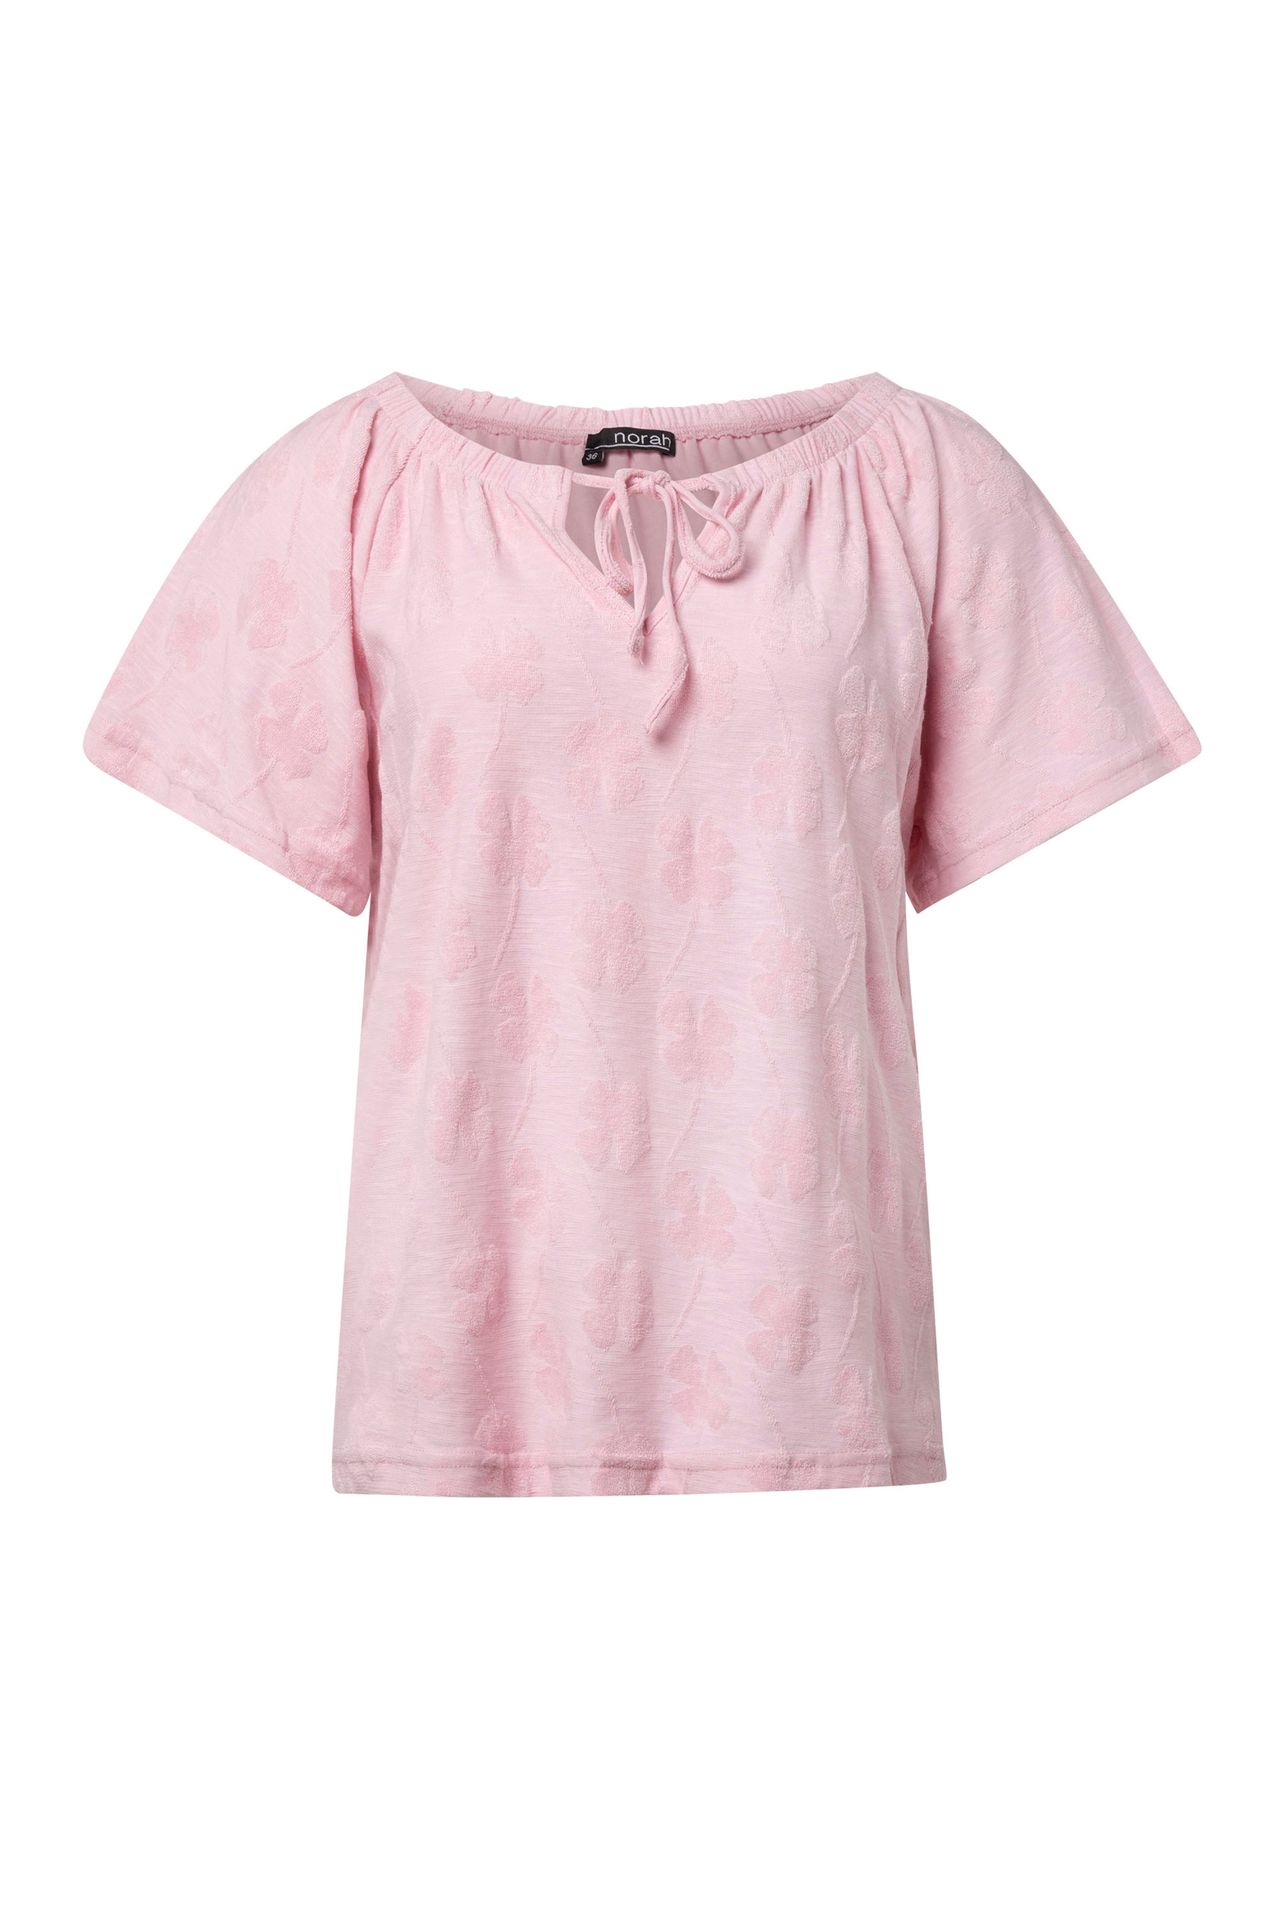 Norah Roze shirt rose 214560-907